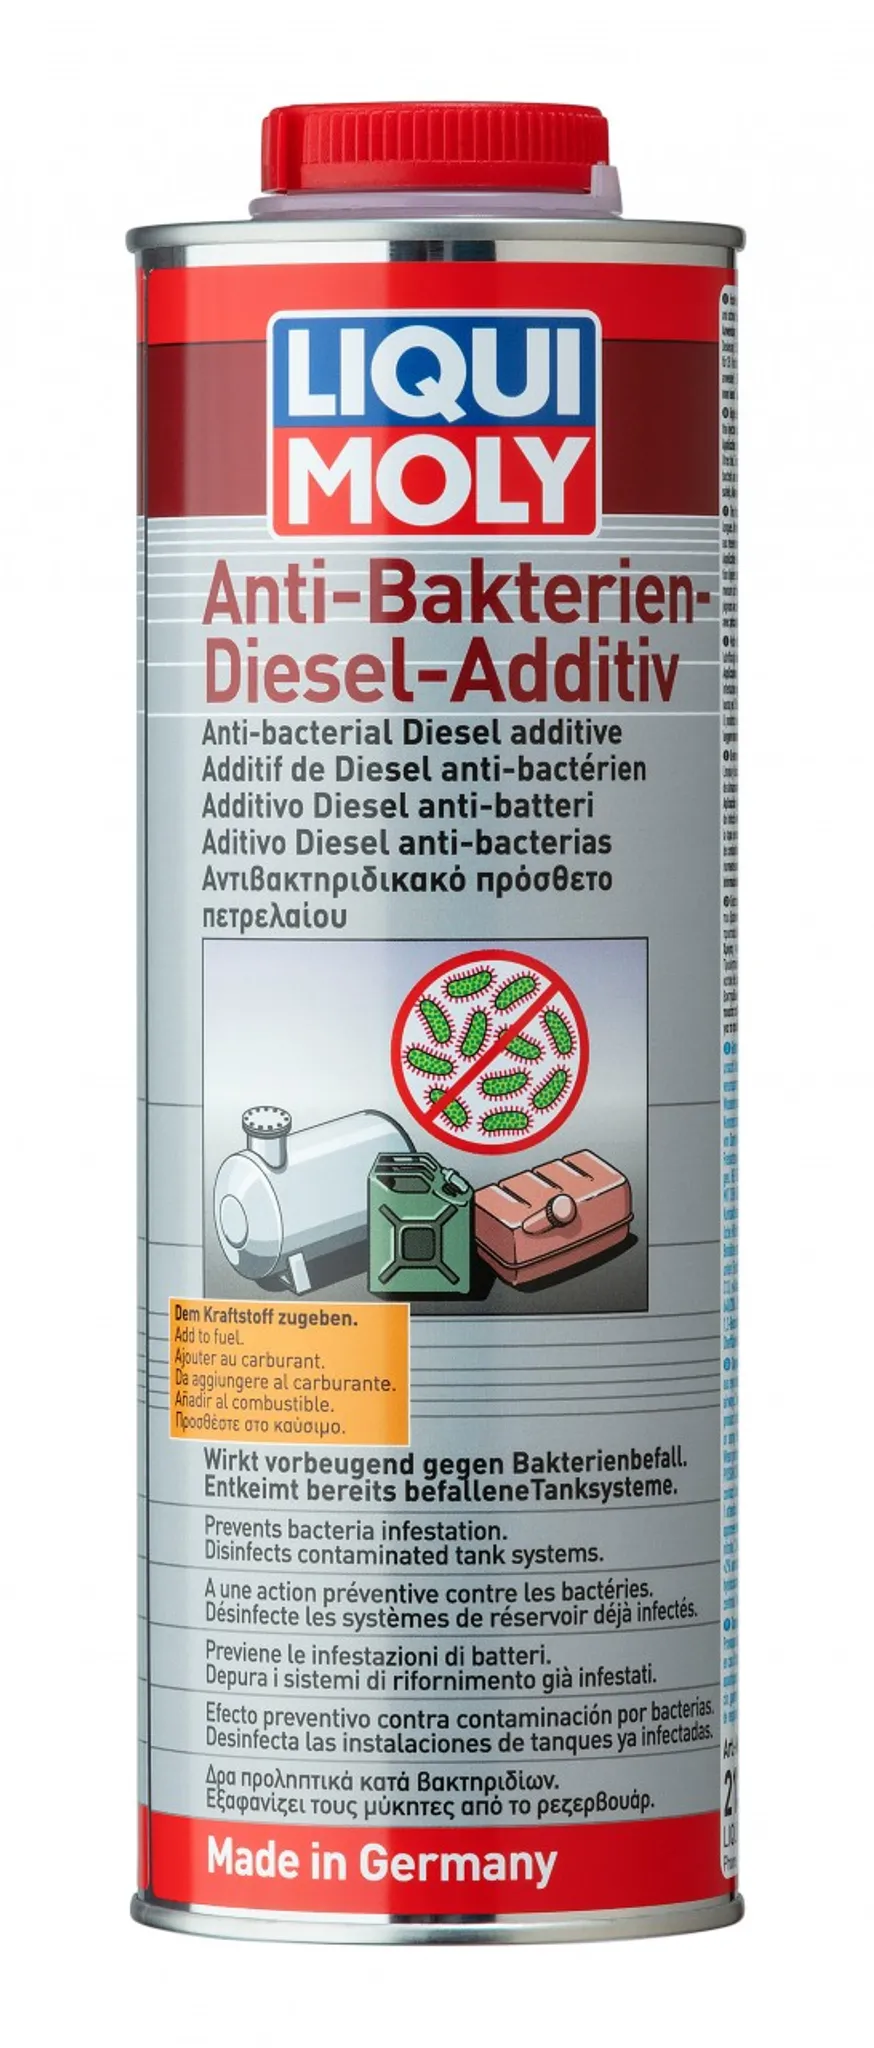 Liqui Moly Diesel-Additiv Liqui Moly Diesel Fließ-Fit 150 ml